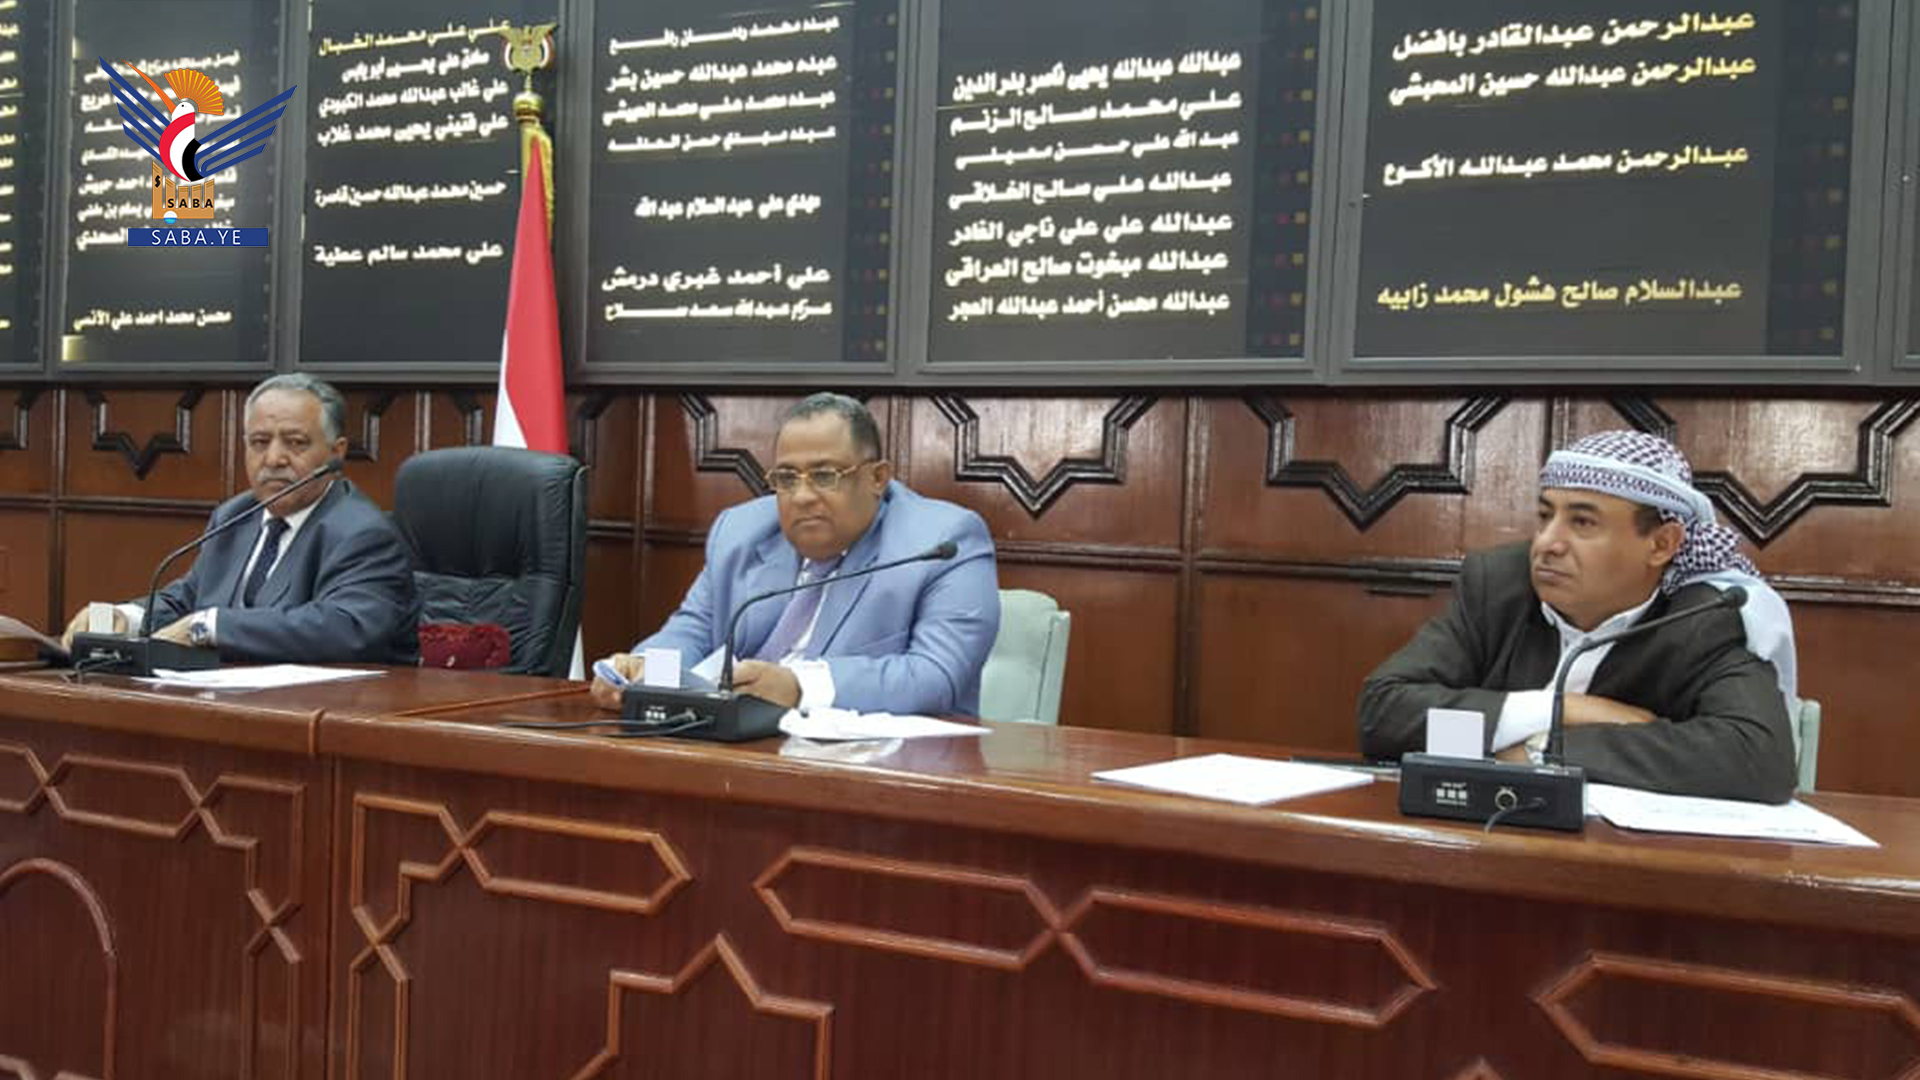 Le Parlement félicite le Guide de la Révolution et le Conseil politique pour l'avènement du mois de Ramadan, et vote un projet de loi interdisant les transactions usuraires